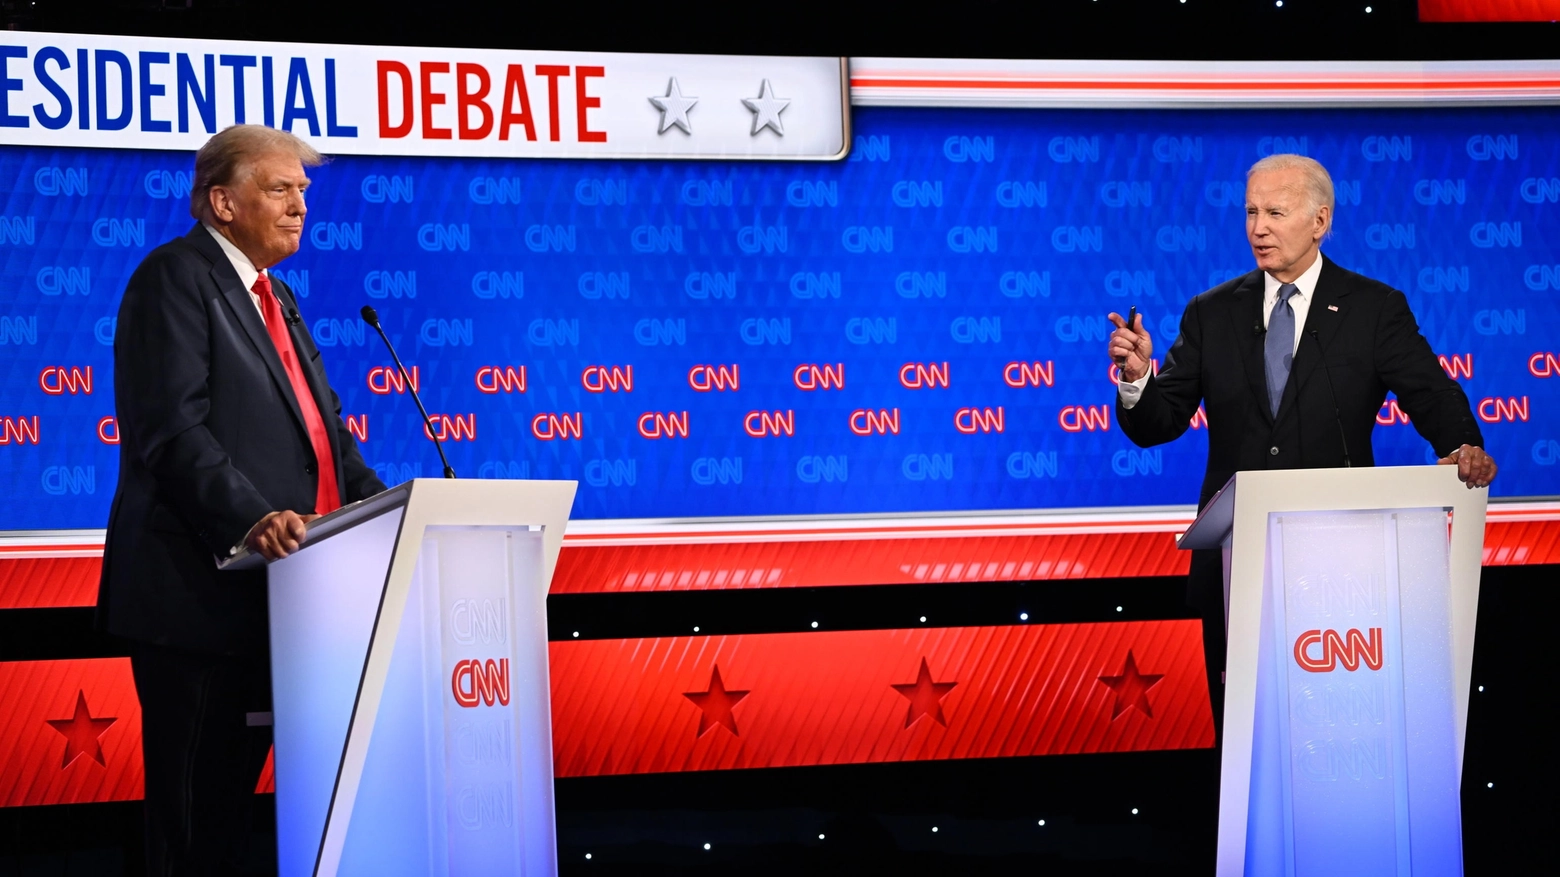 Il dibattito presidenziale in diretta tv tra l'ex presidente Donald Trump e il suo successore Joe Biden